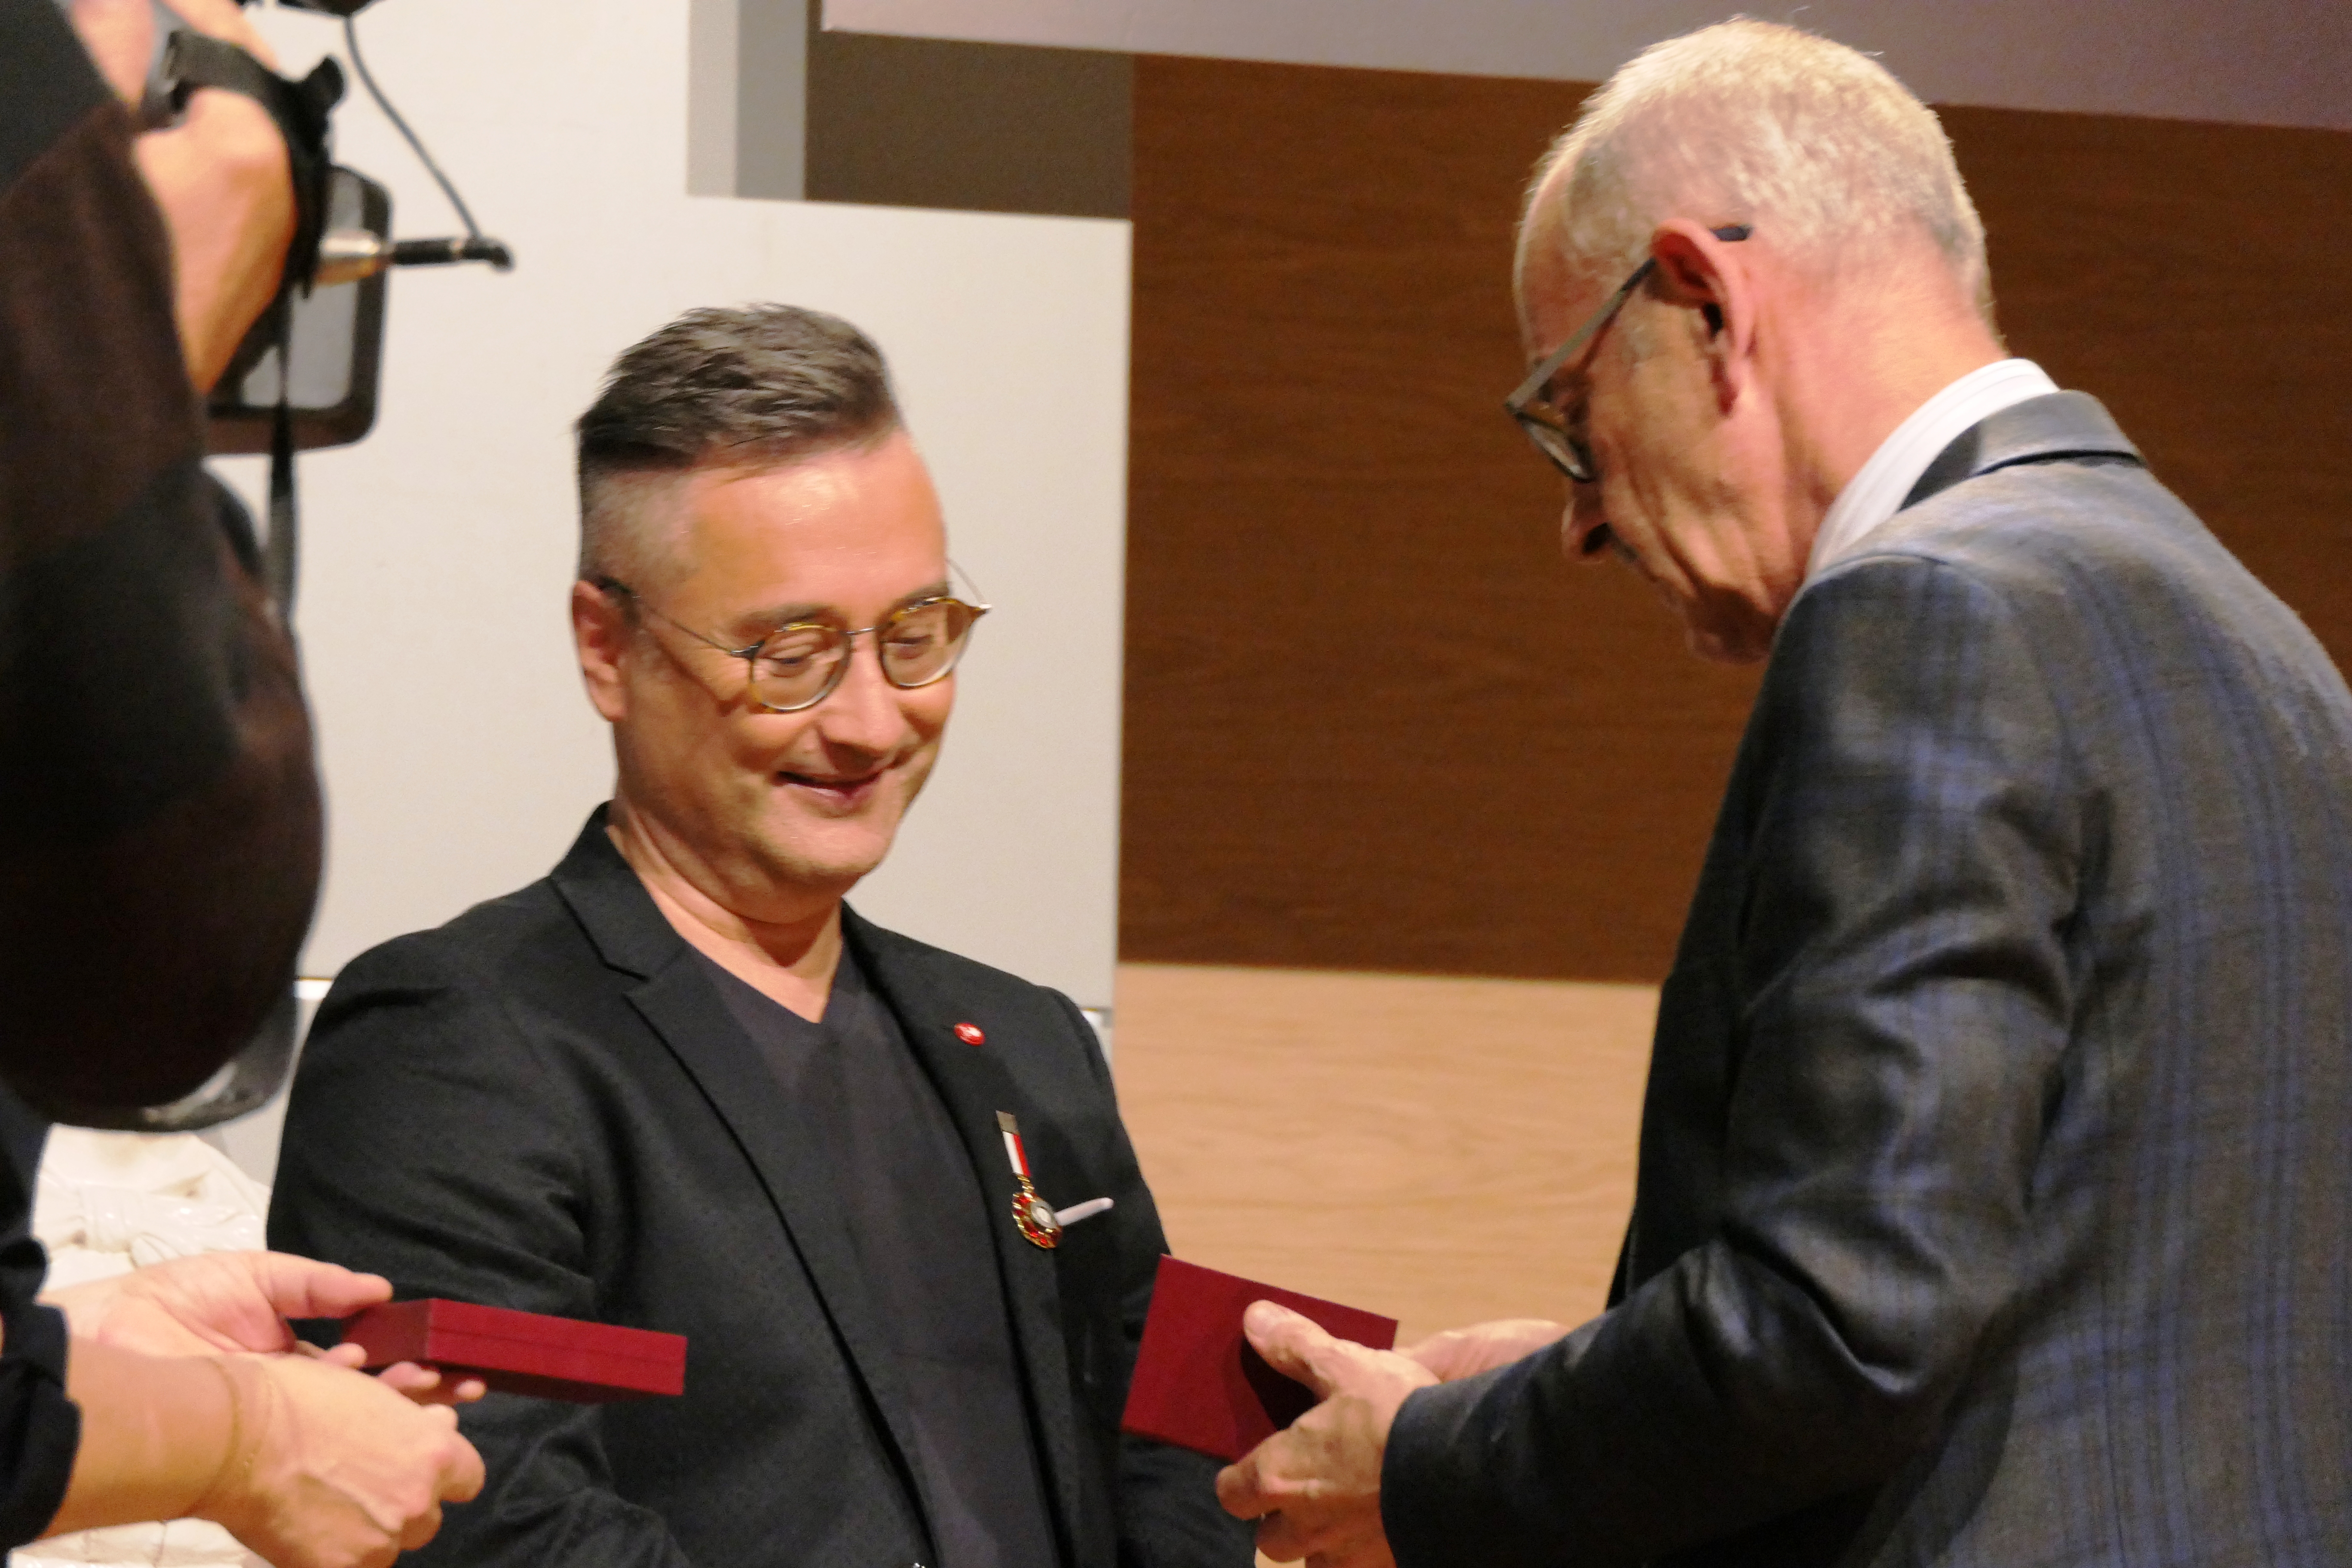 Zdjęcie przedstawiające od prawej Wizytatora CEA Zenobiusza Kajdę wręczającego odznakę honorową „Zasłużony dla kultury polskiej” doktorowi habilitowanemu Jackowi Ściborowi stojącego stojącego po lewej stronie.